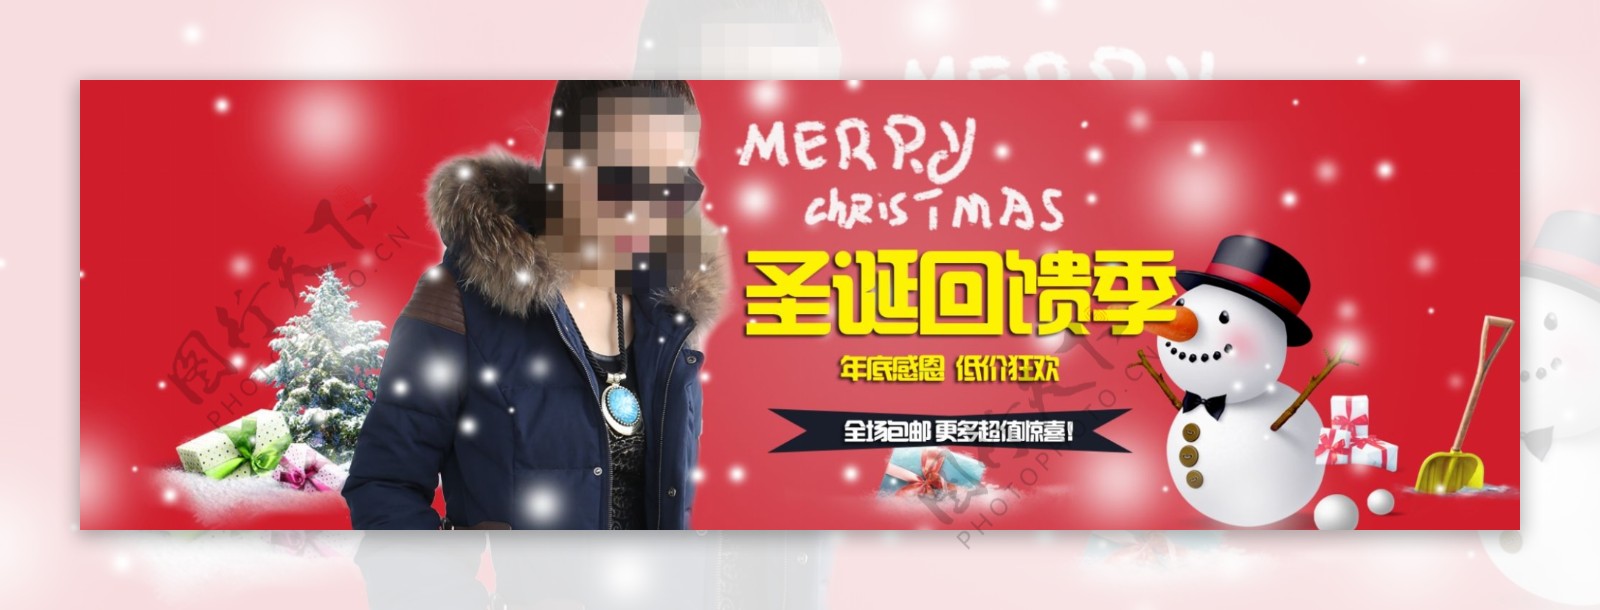 淘宝天猫首页圣诞节日海报宣传图